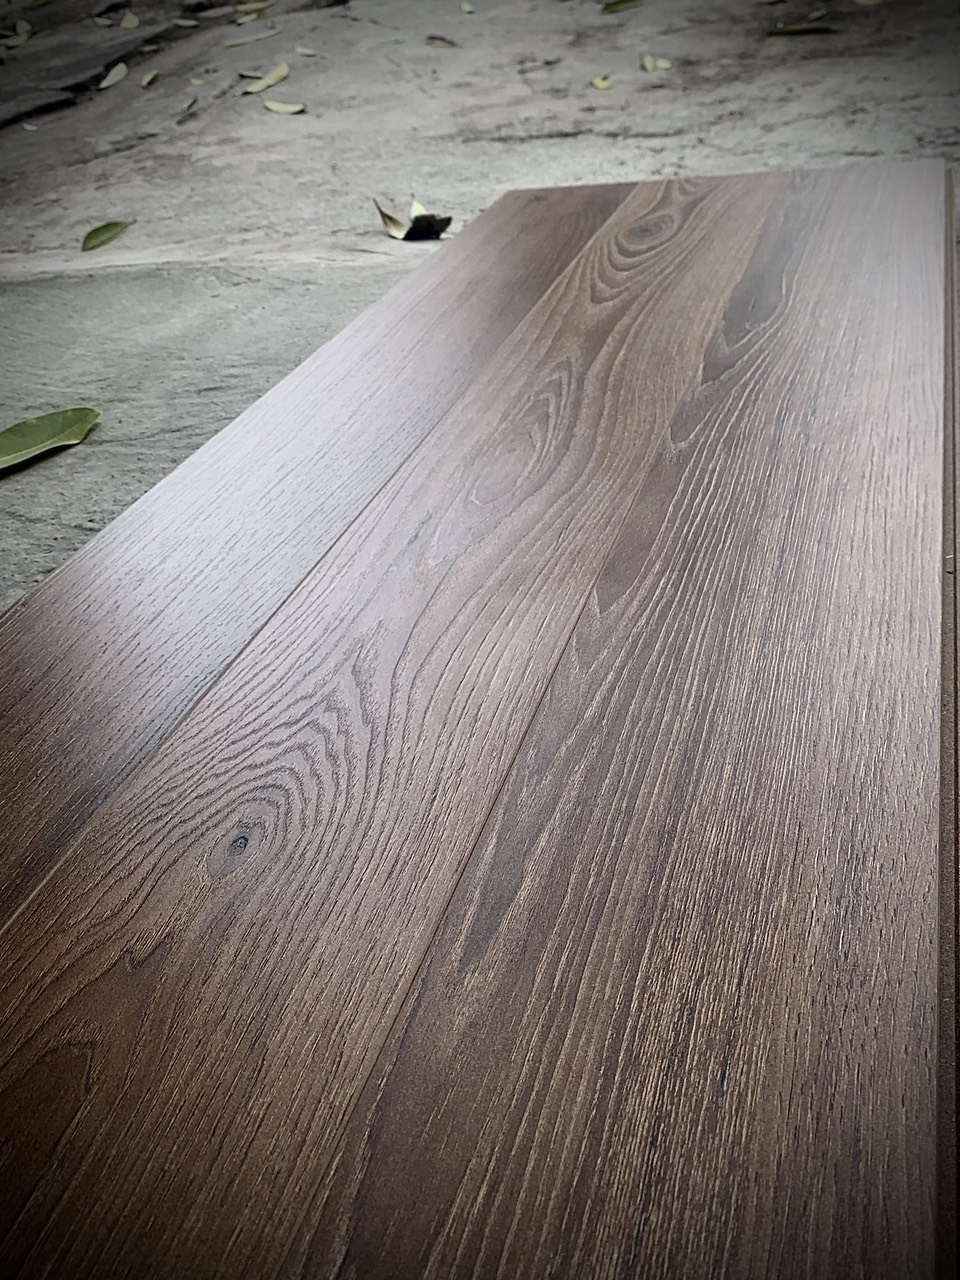 Sàn gỗ với các đường vân nổi trên bề mặt tạo cảm giác tự nhiên như vân gỗ thật.